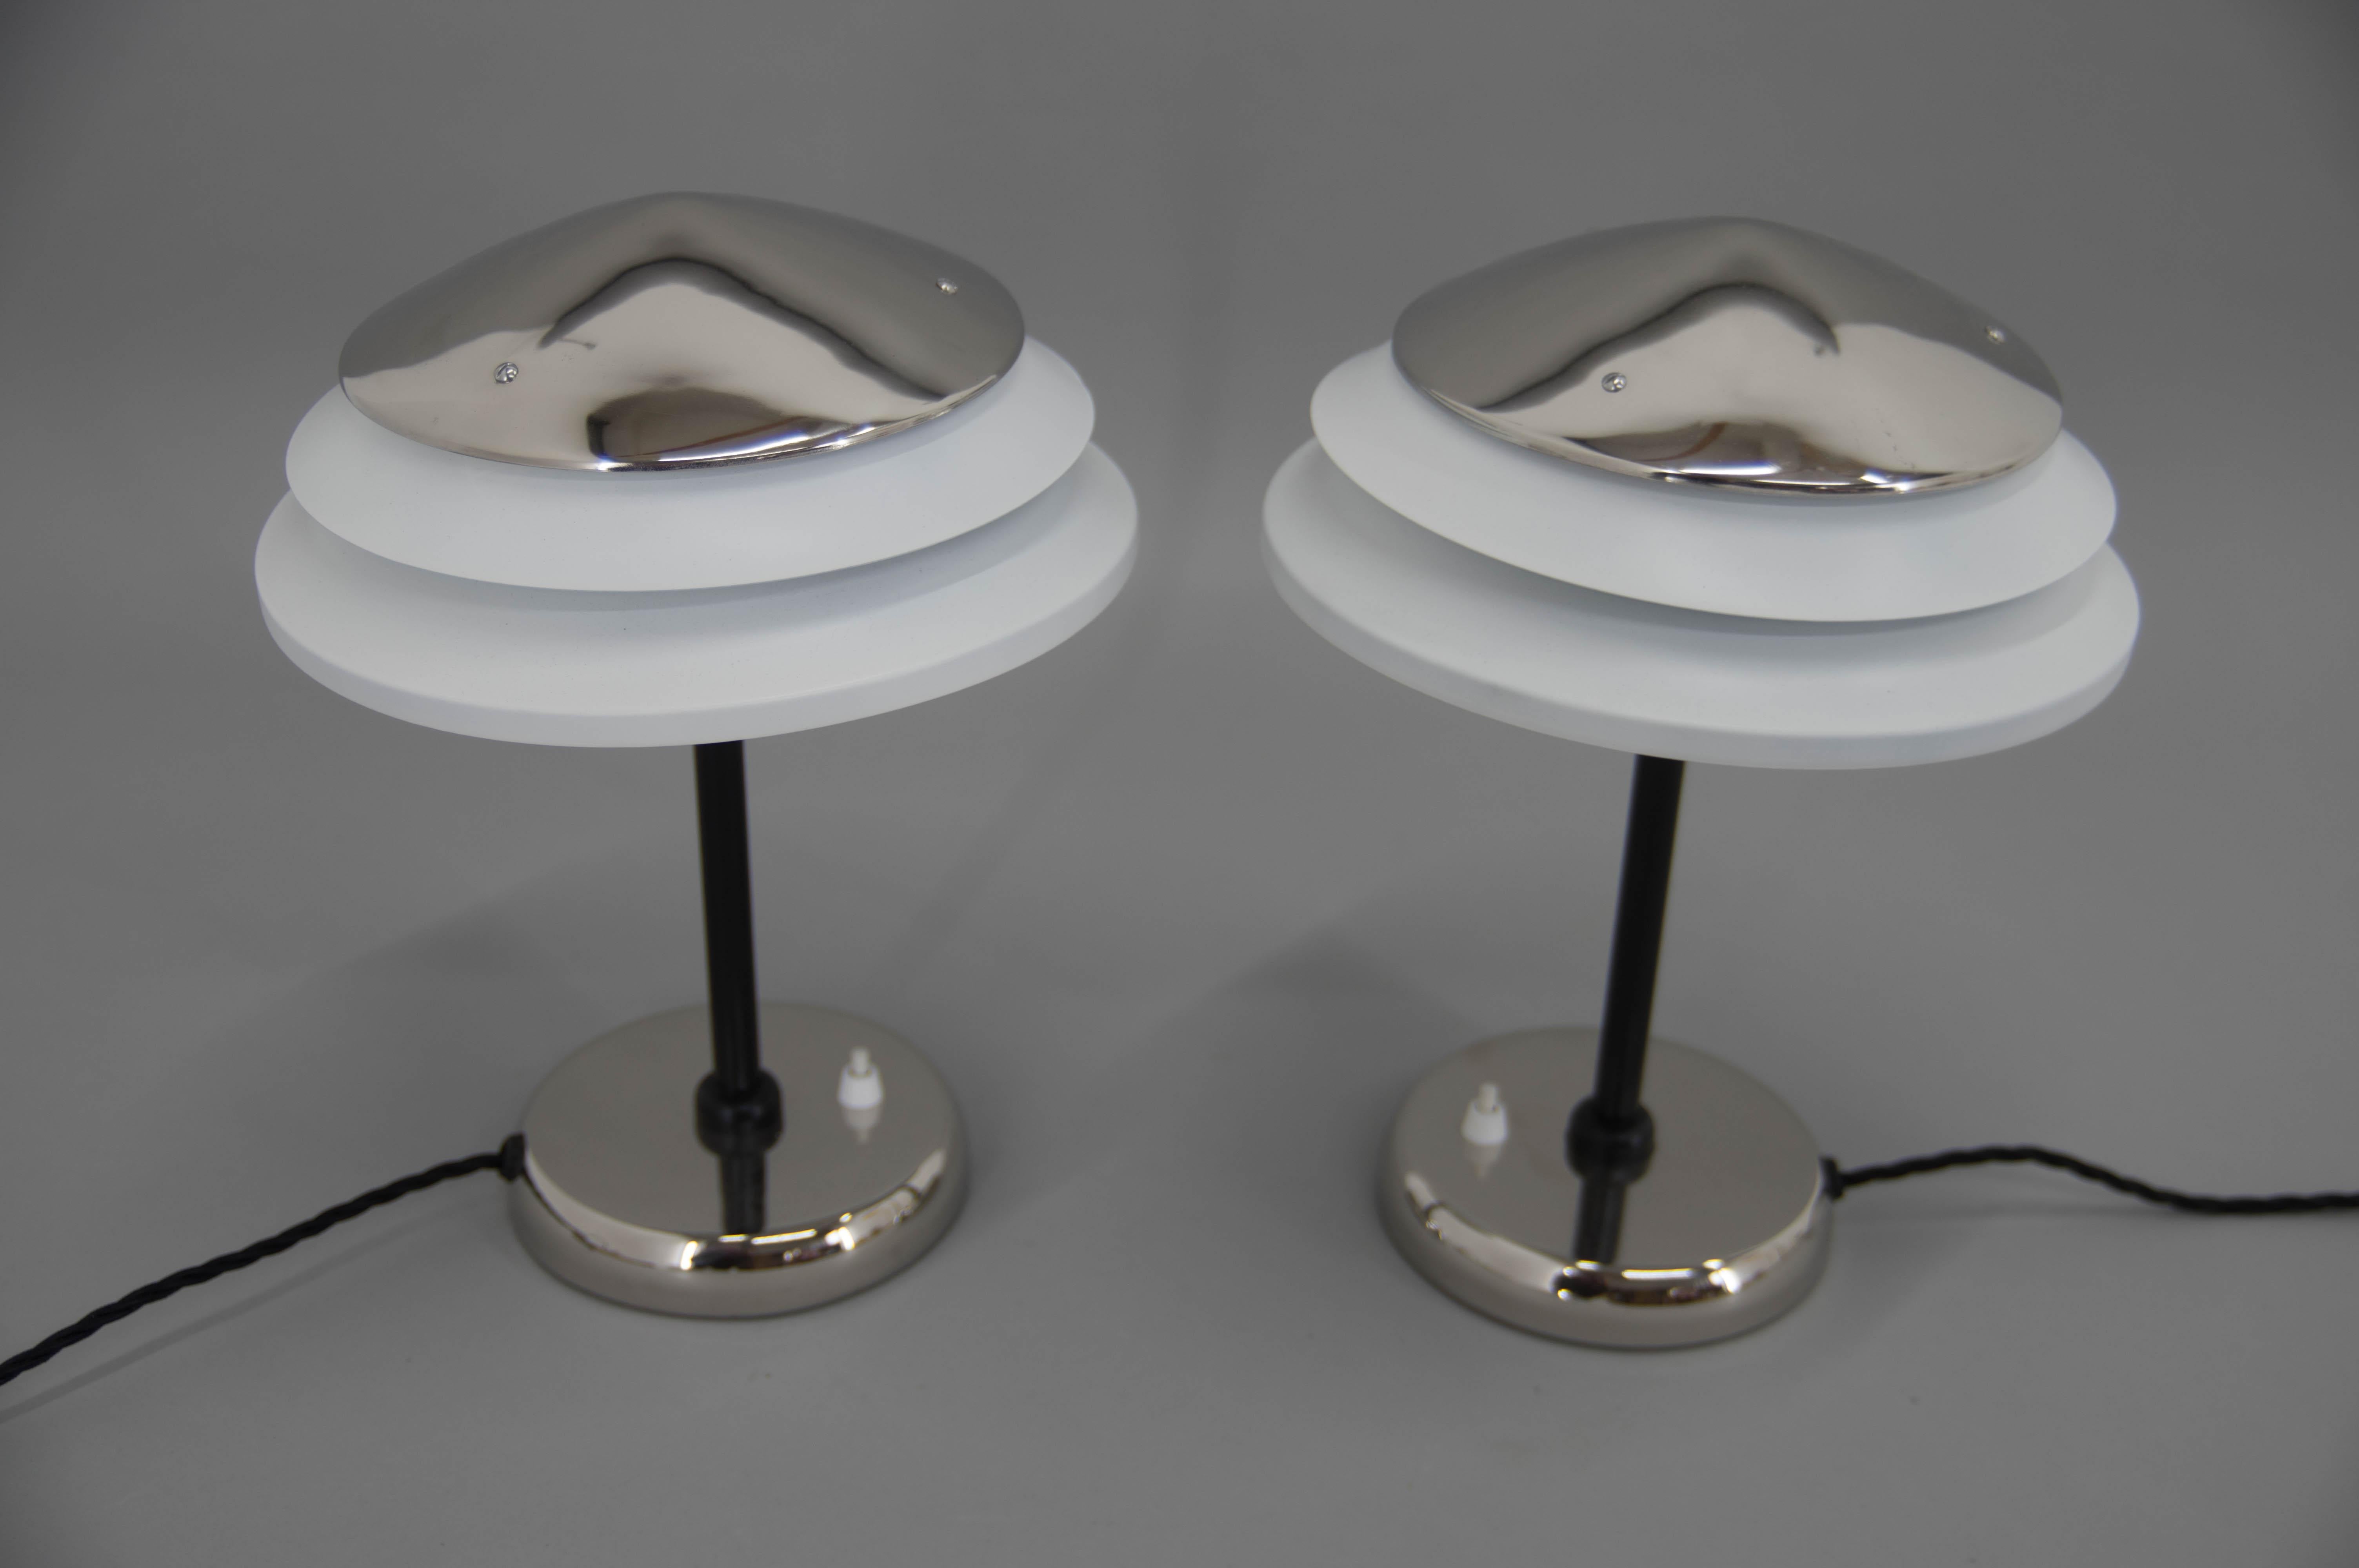 Restaurierter Satz von zwei Tischlampen des Herstellers ZUKOV aus den 1950er Jahren.
Neue Vernickelung und neue schwarz-weiße Farbe.
Neu verkabelt:
1x40W, E25-E27 Glühbirne
Inklusive US-Steckeradapter